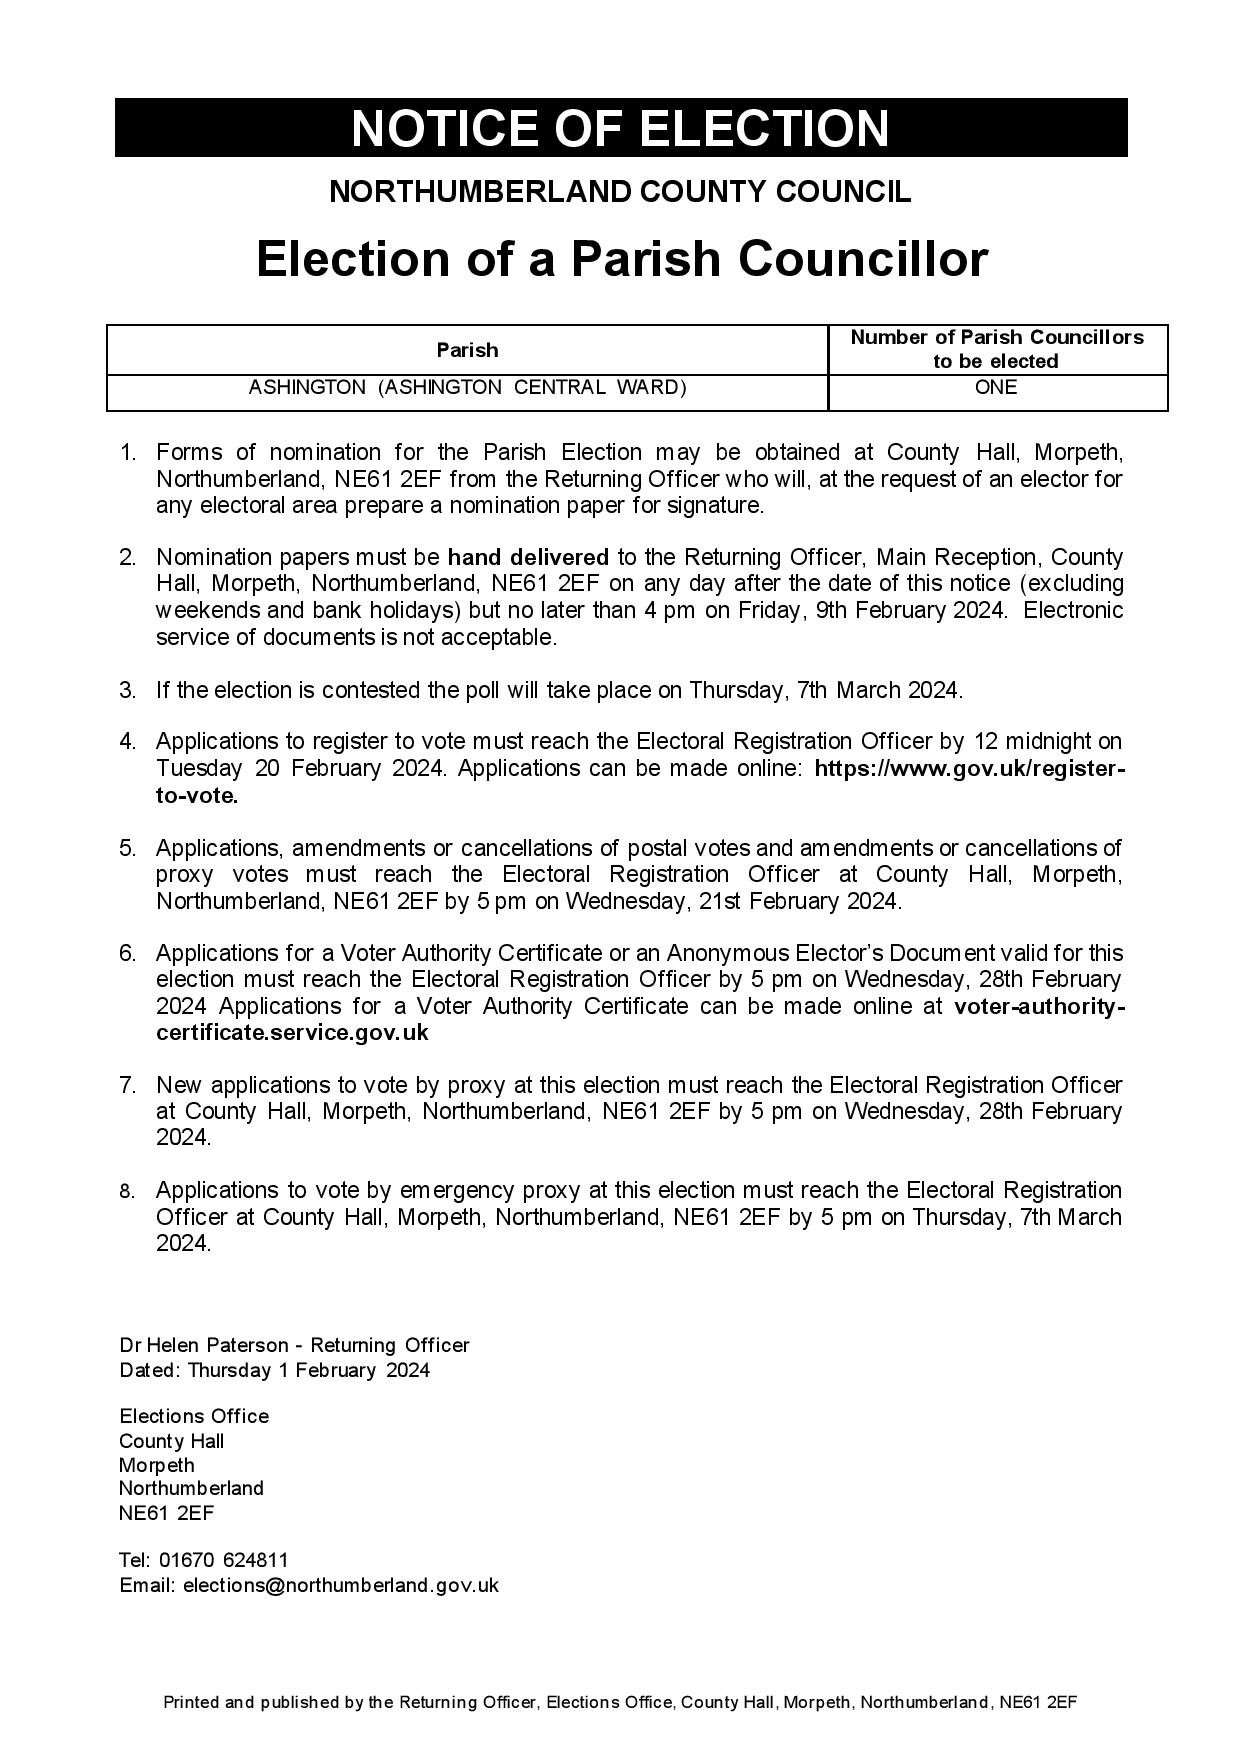 Election Notice for Ashington Central Ward Town Councillor